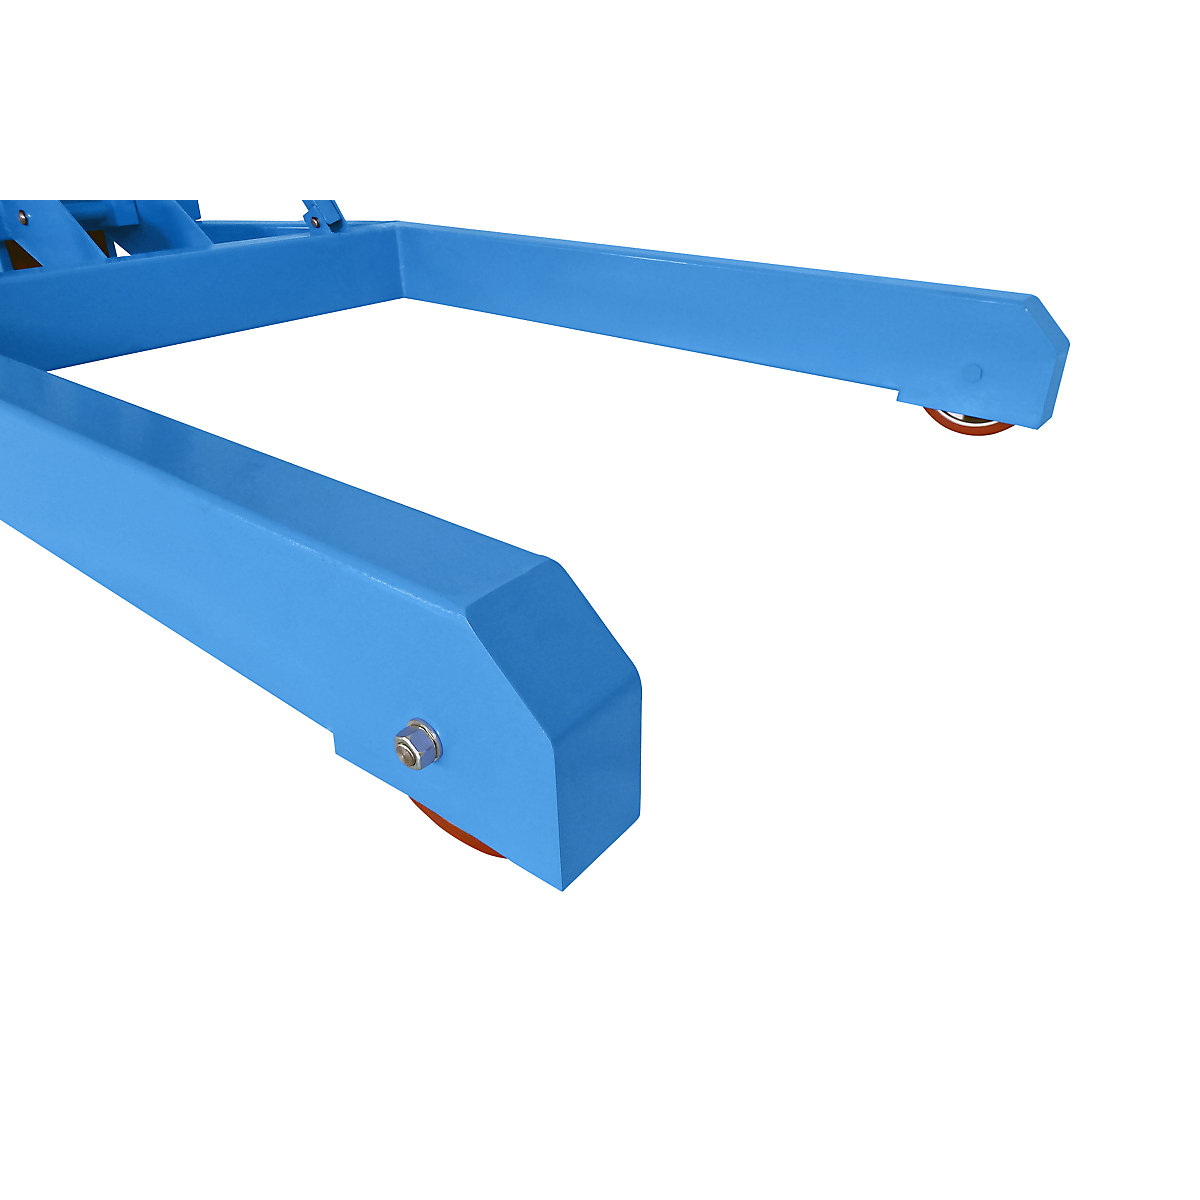 BLUE workshop crane (Product illustration 6)-5